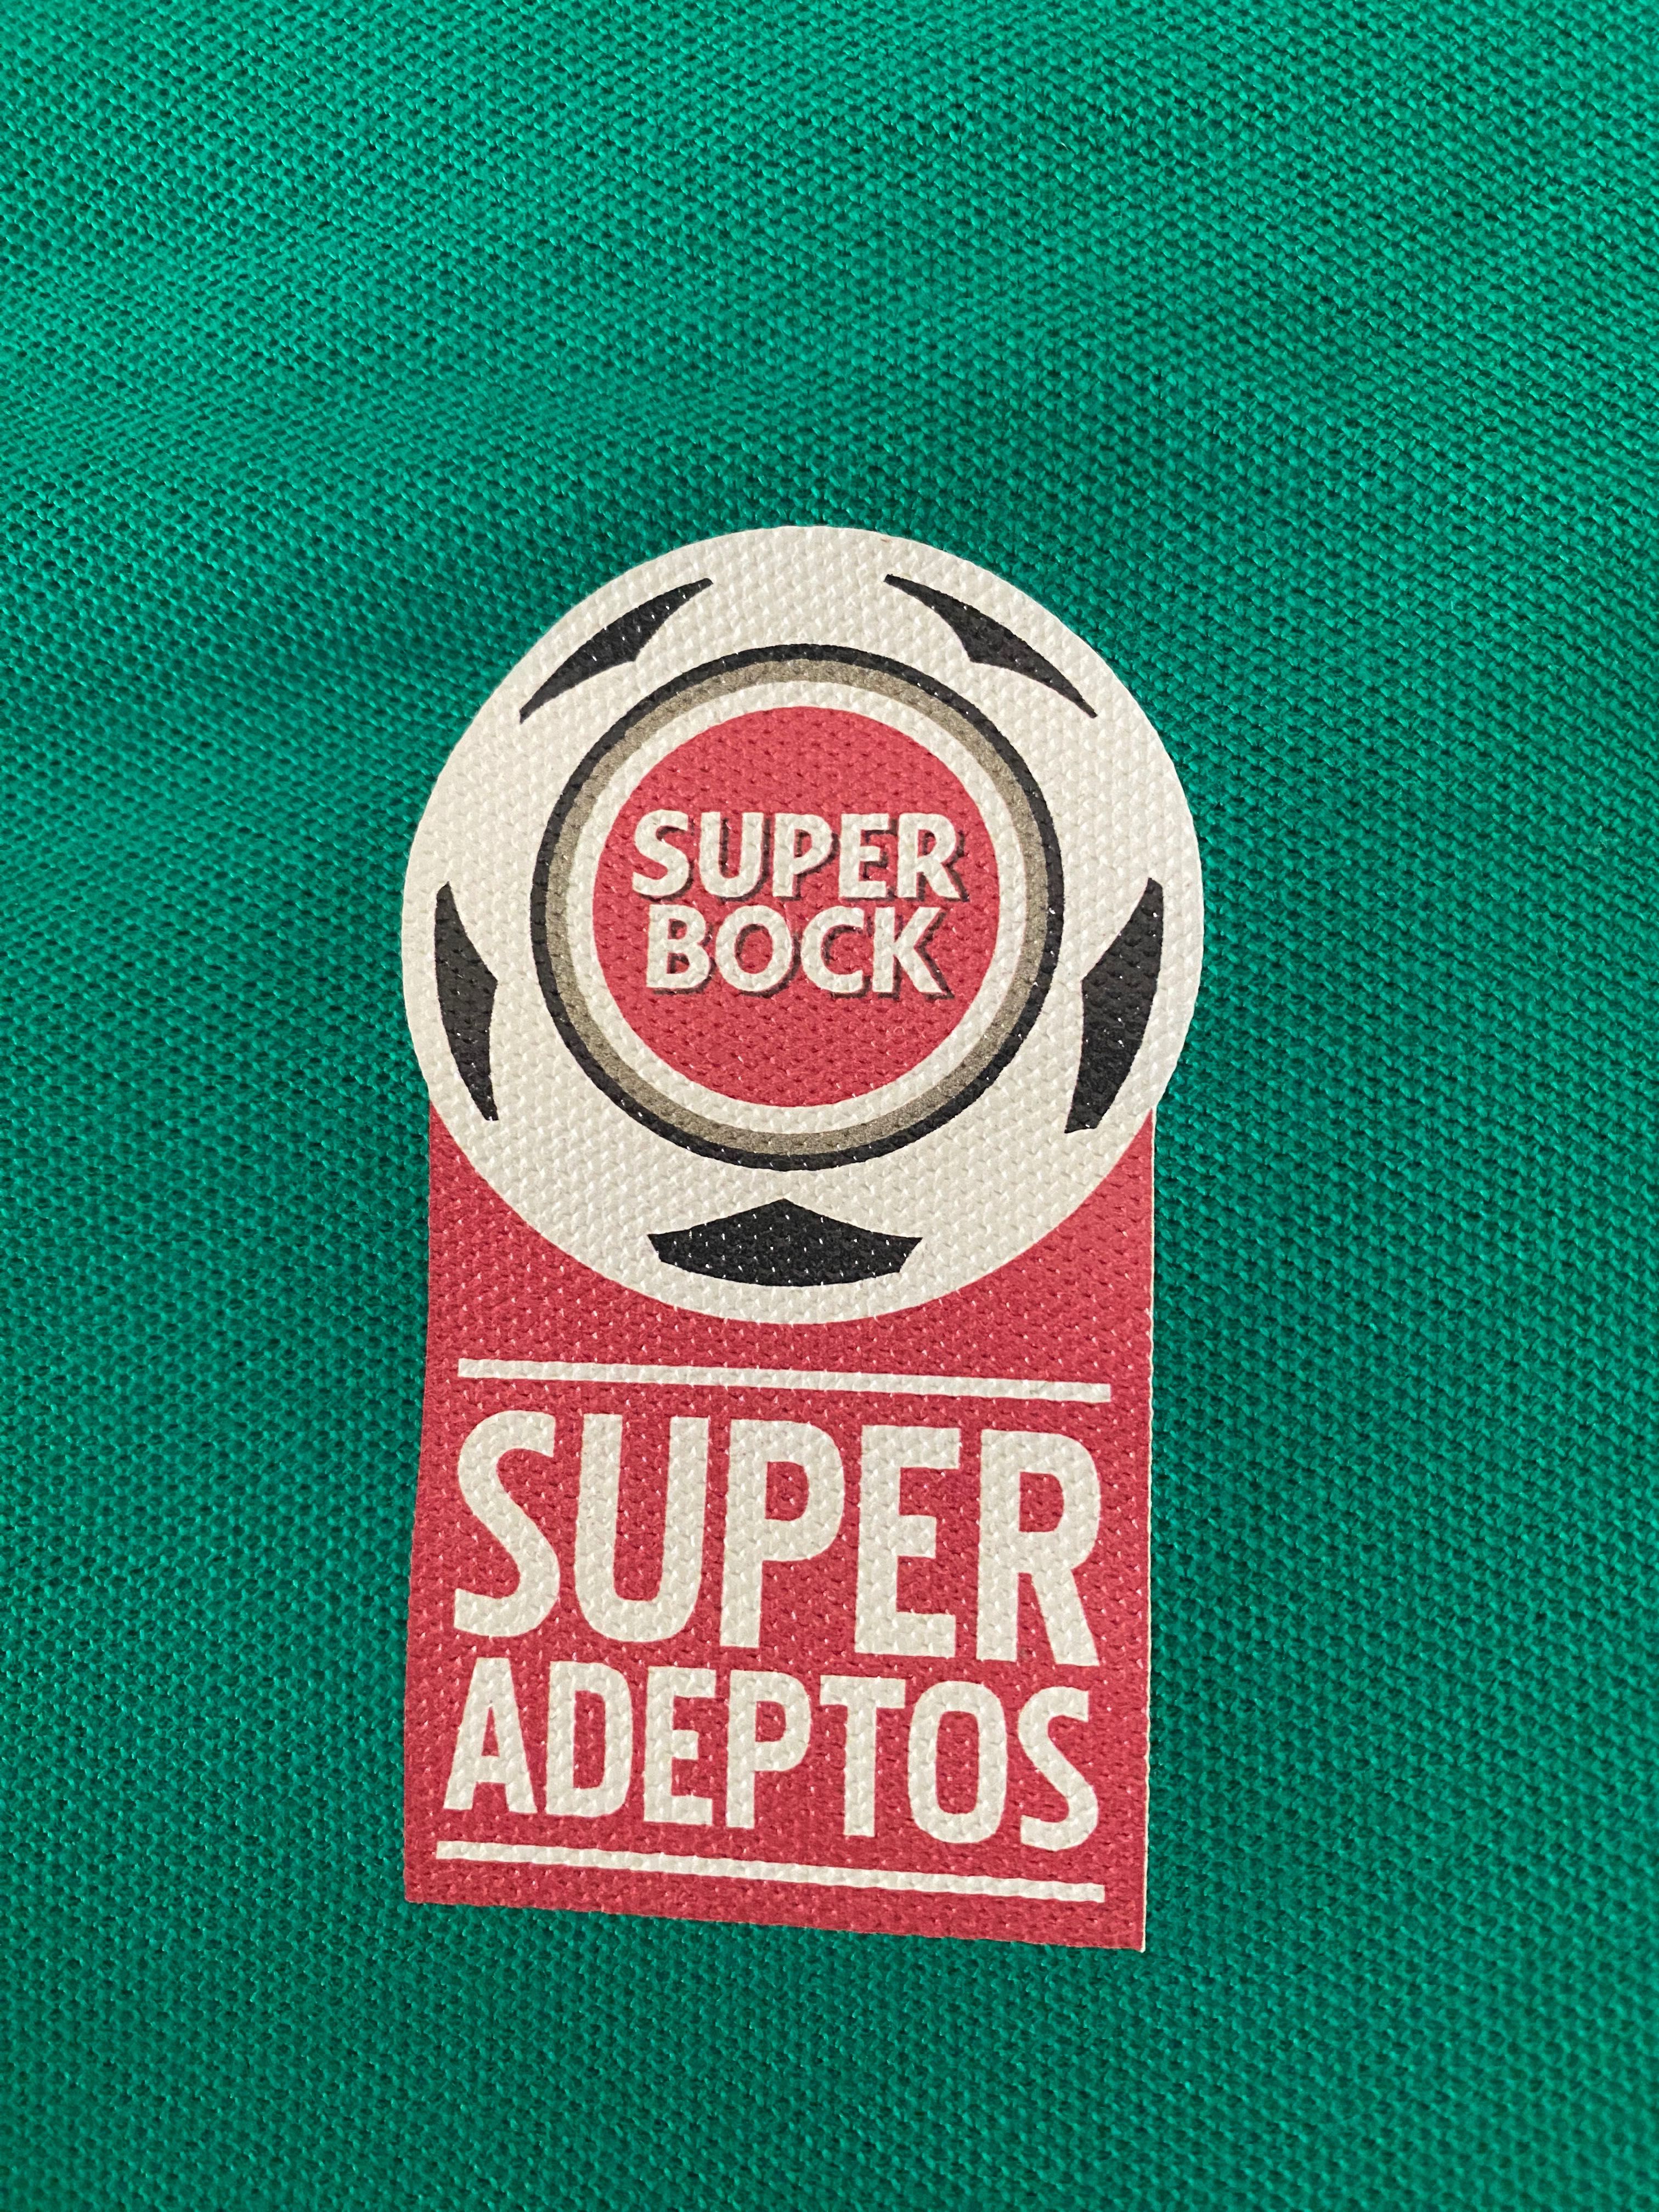 Pólo Sporting Clube de Portugal - SCP - Super Bock Super Adeptos